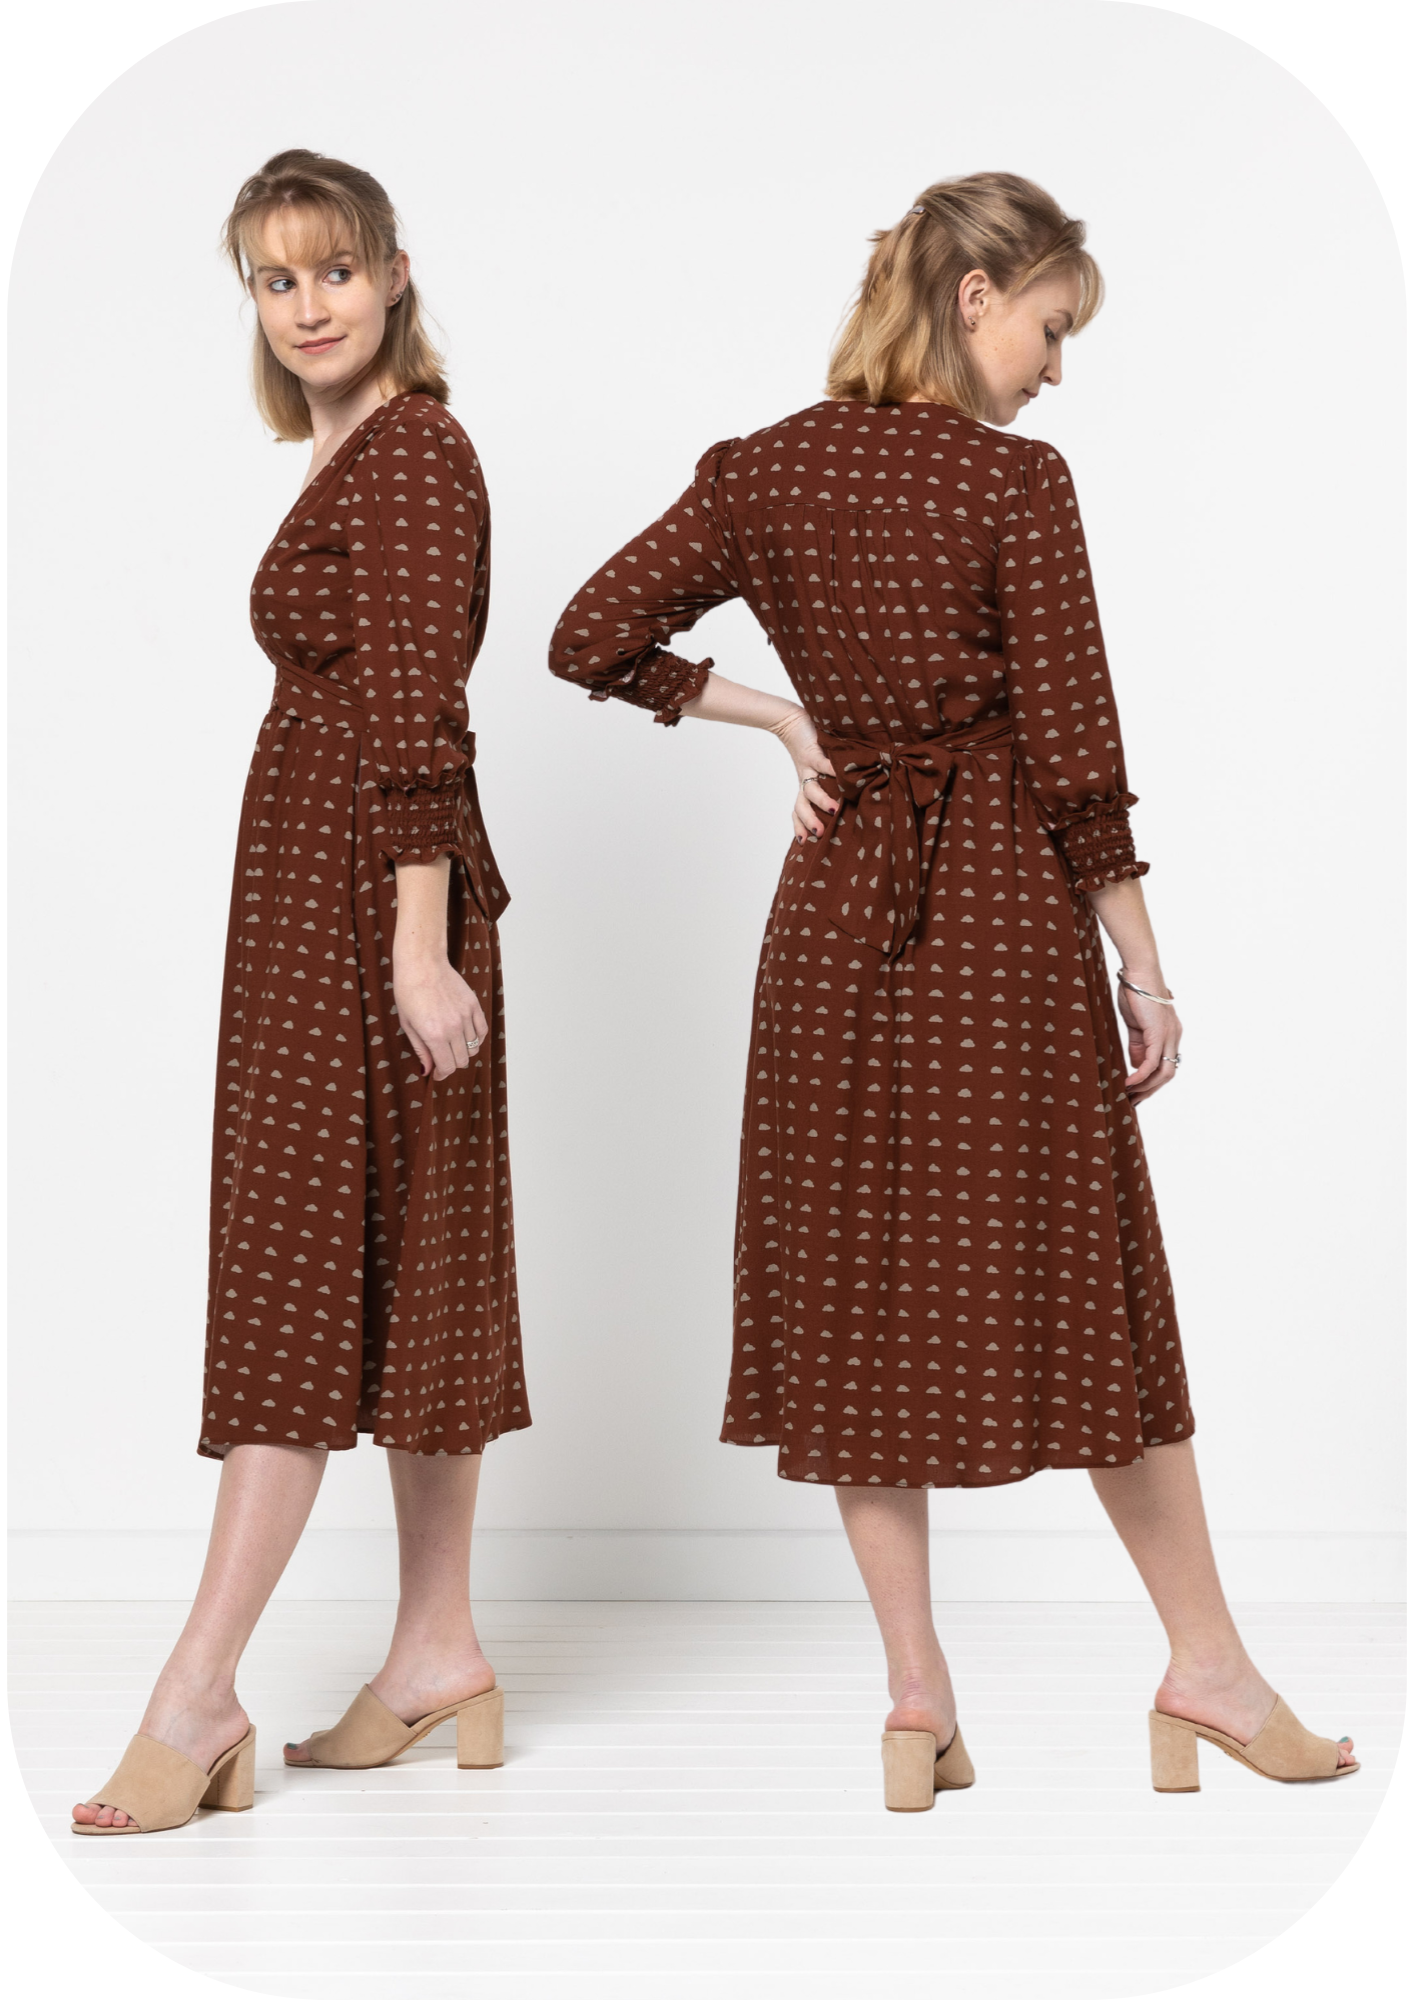 Philomena Woven Dress - New Pattern